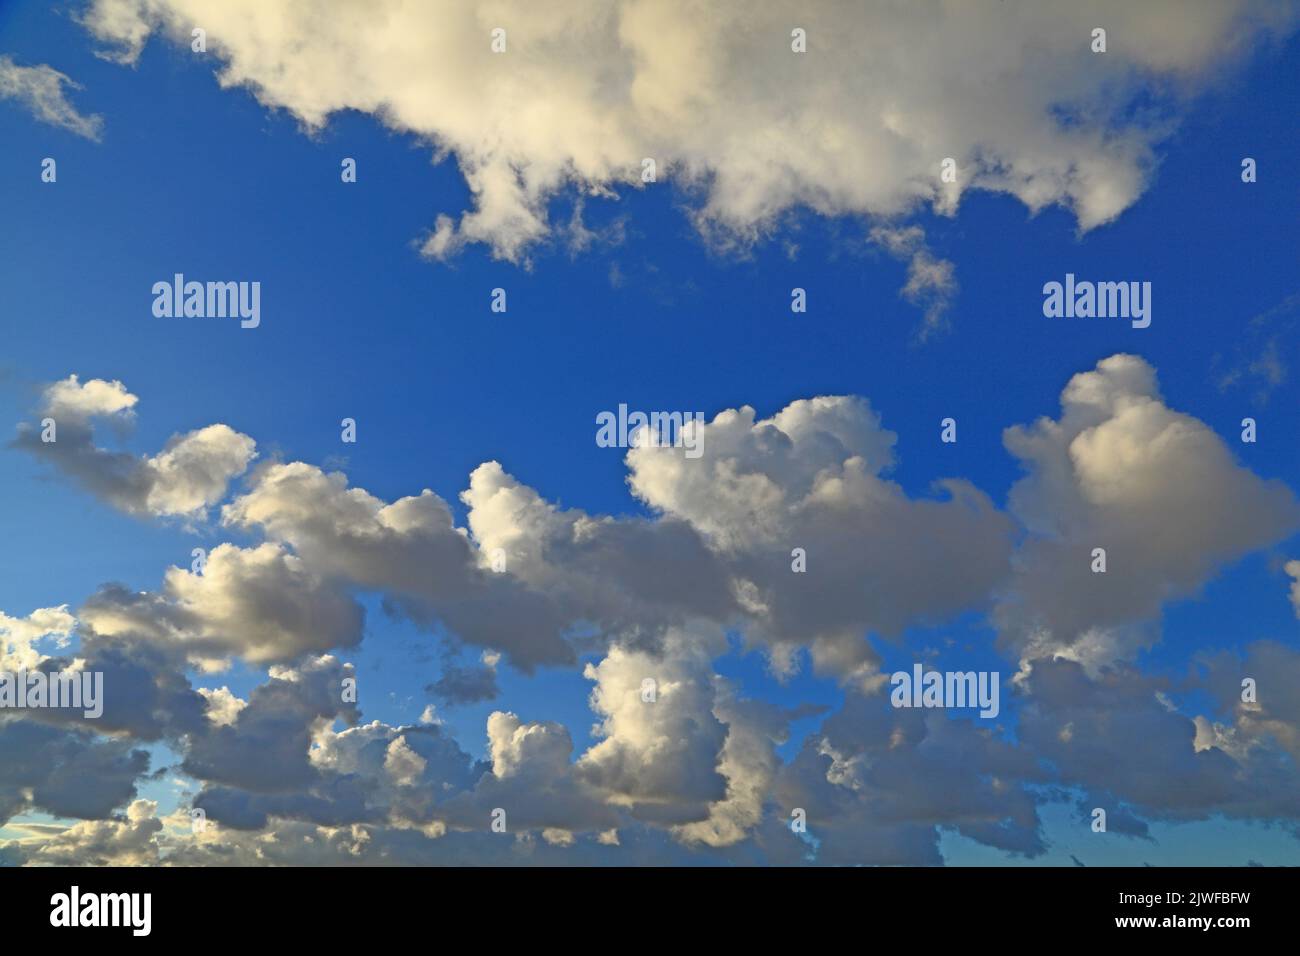 Weiß, grau, dunkel, Cumuluswolke, Wolken, Blauer Himmel, Himmel, Wetter, Meteorologie, England, VEREINIGTES KÖNIGREICH Stockfoto